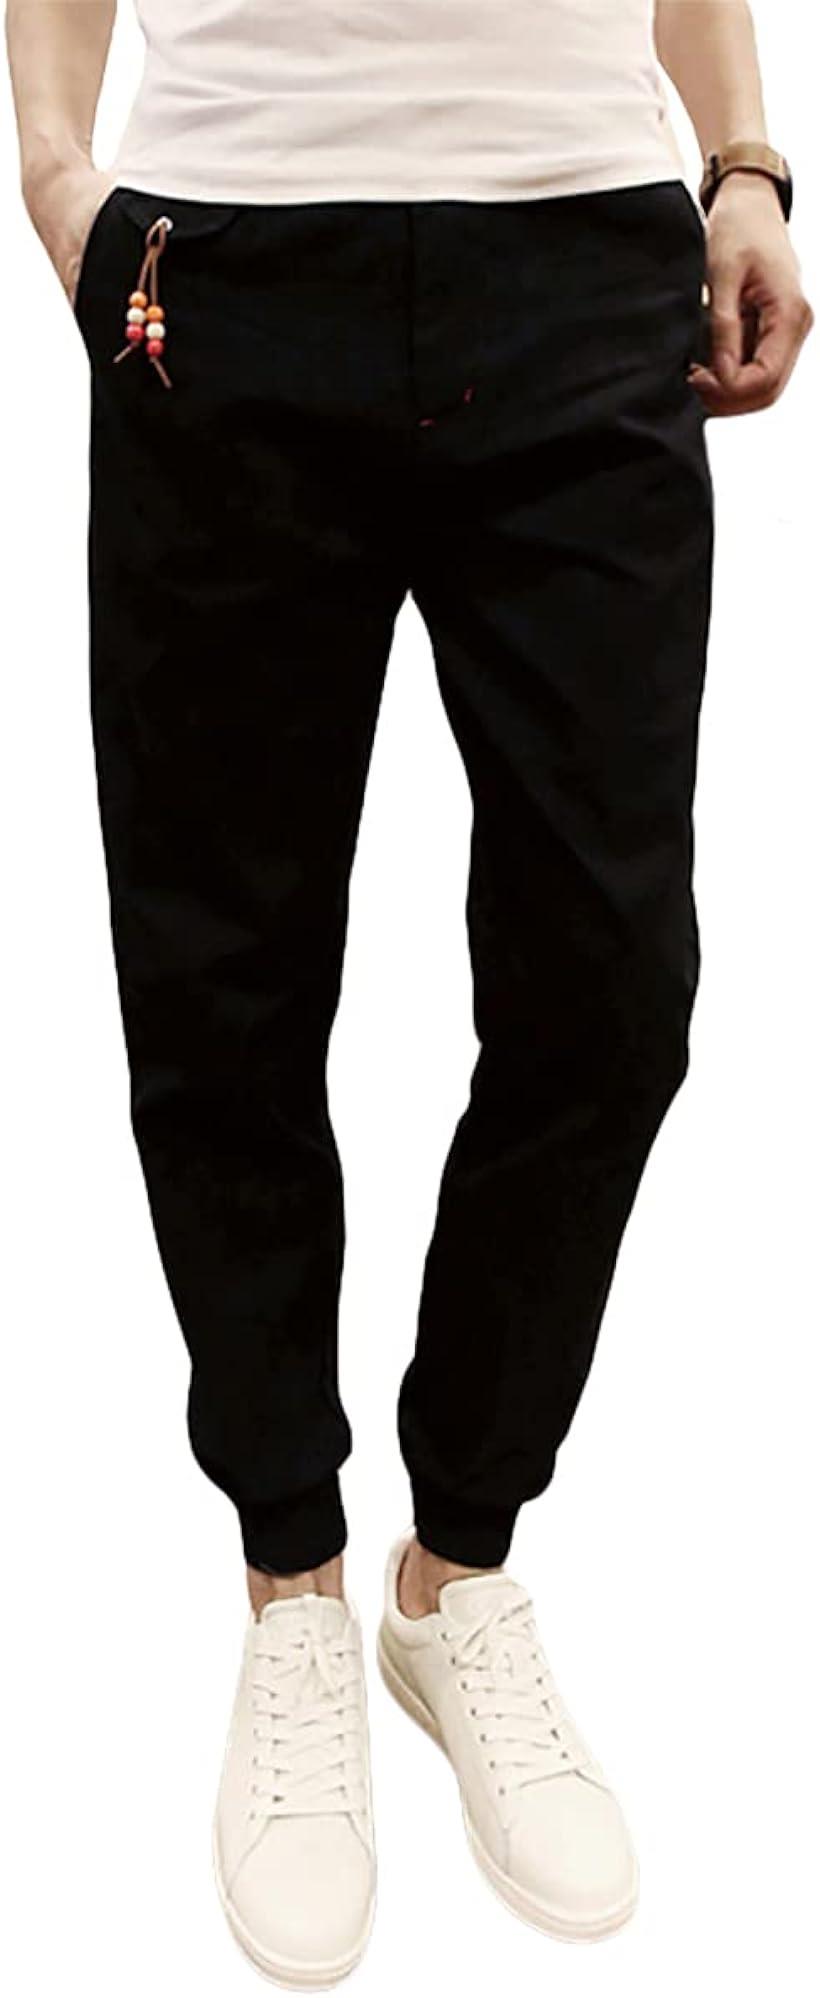 メリュエル スリムフィット カジュアル ロングパンツ ベルト通しあり ポケット付き ズボン 無地 メンズ( ブラック, M)